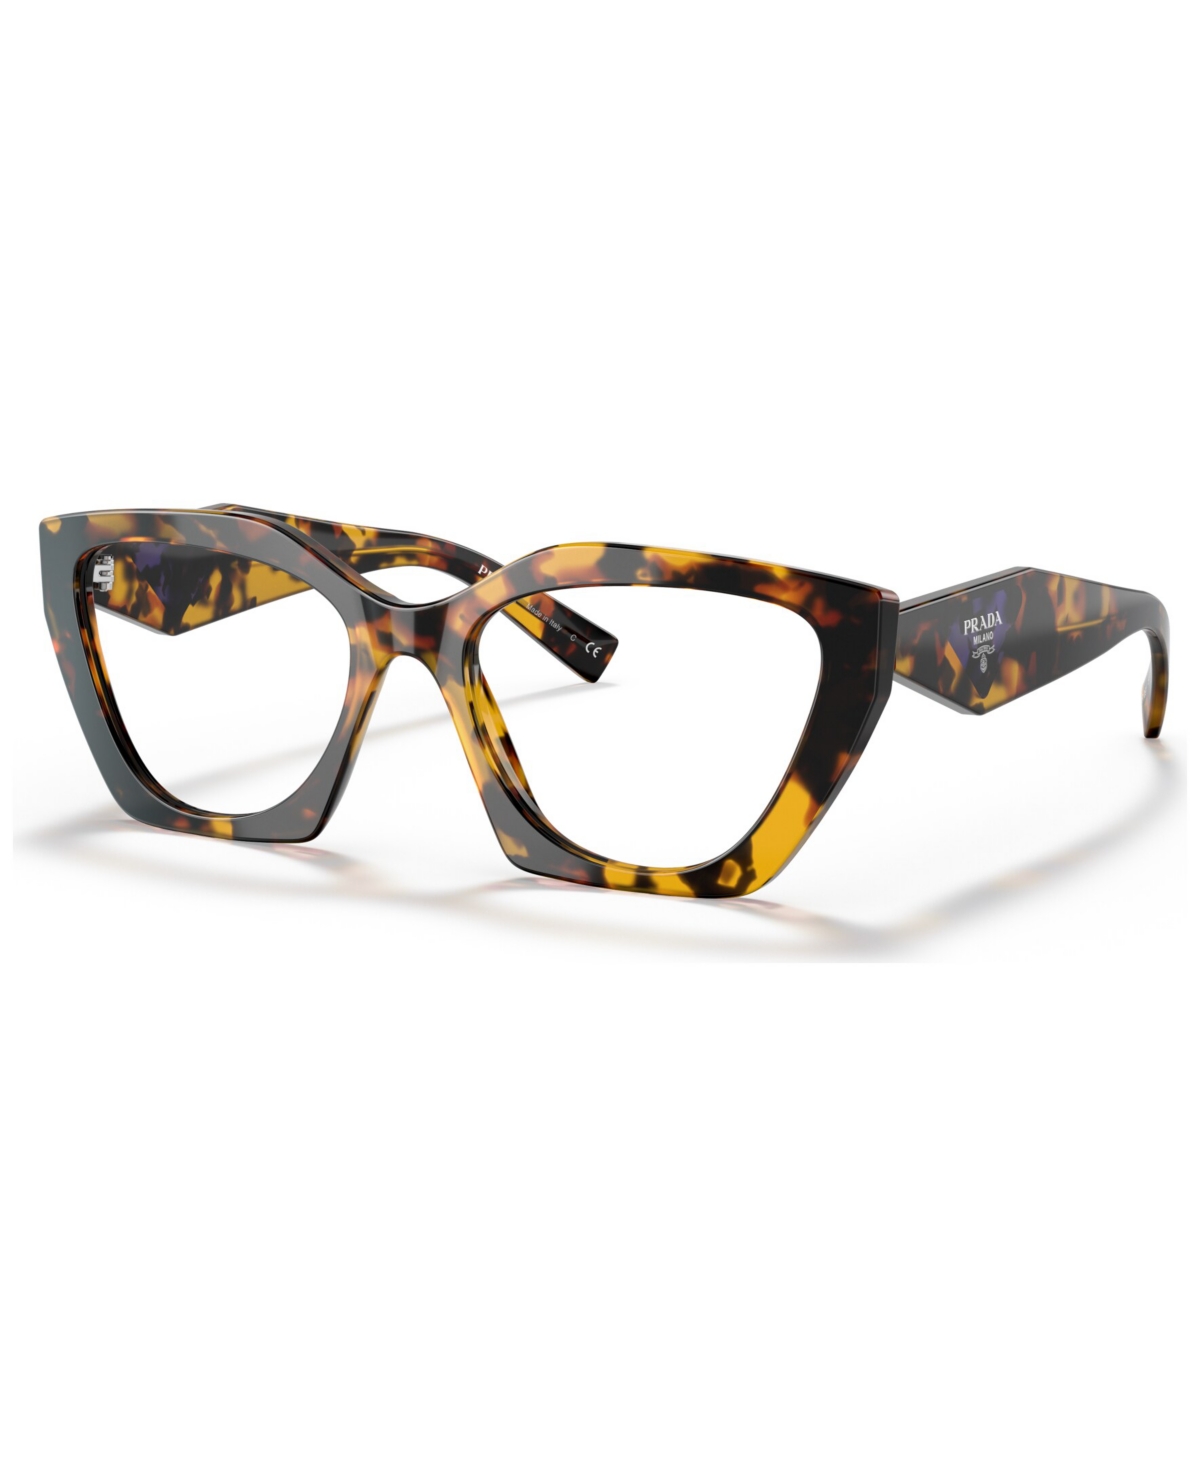 Women's Irregular Eyeglasses, PR09YV54-o - Honey Tortoise